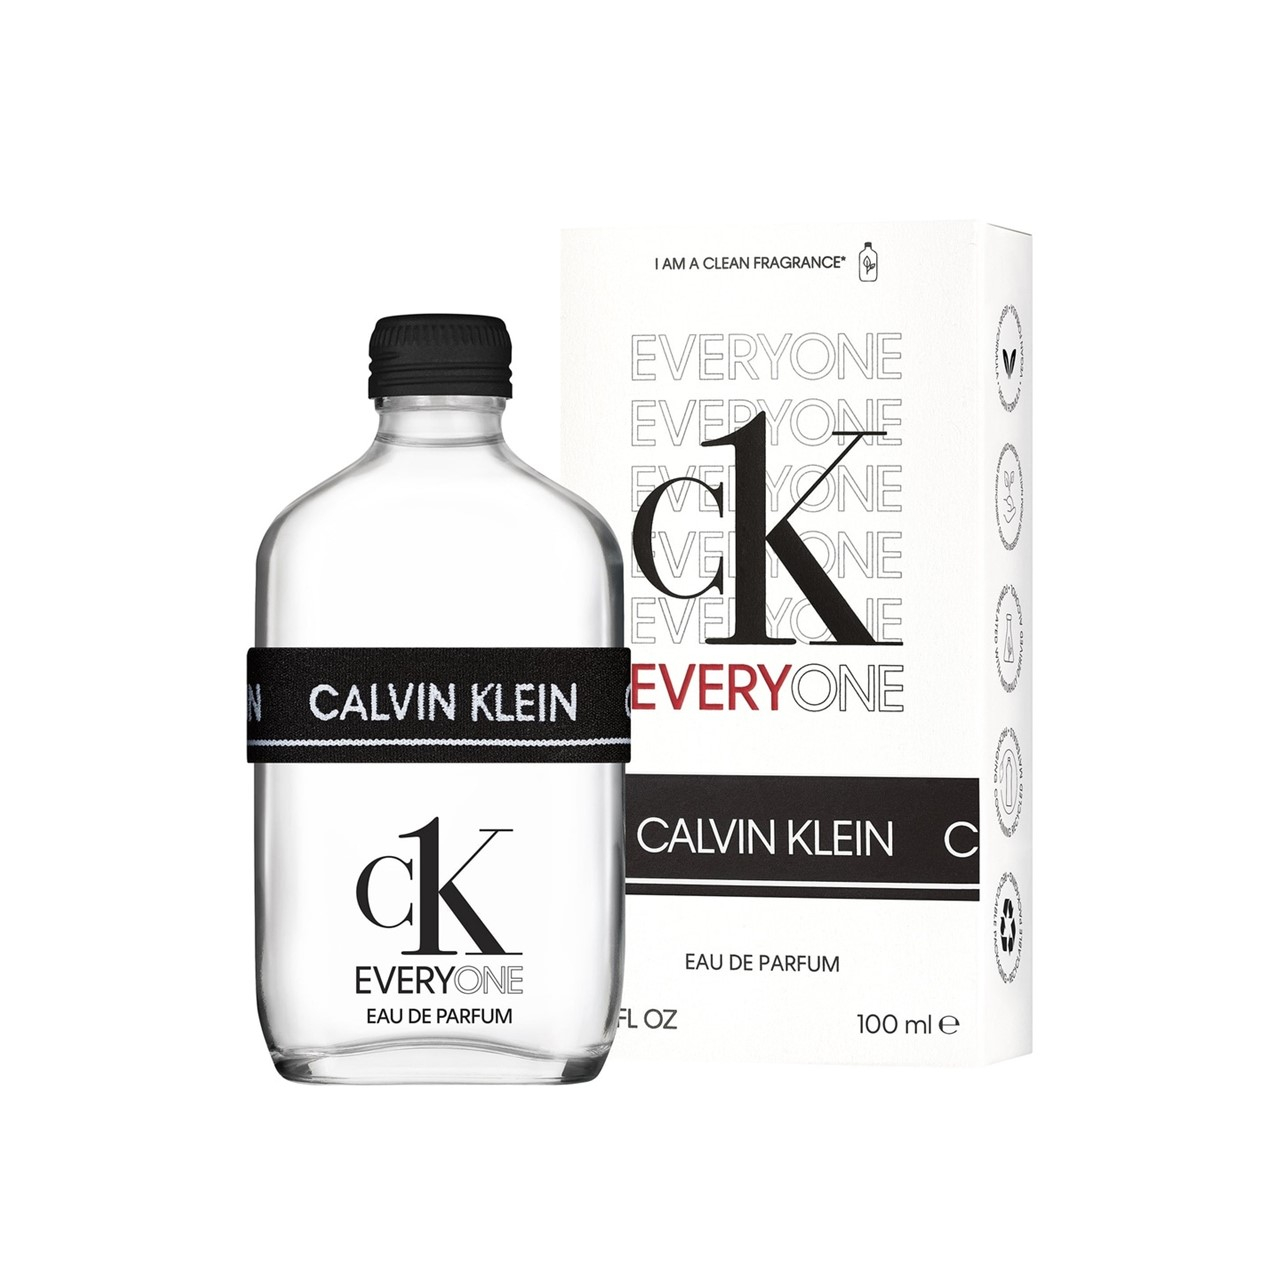 Everyone CK · de Buy USA Parfum Klein Eau Calvin